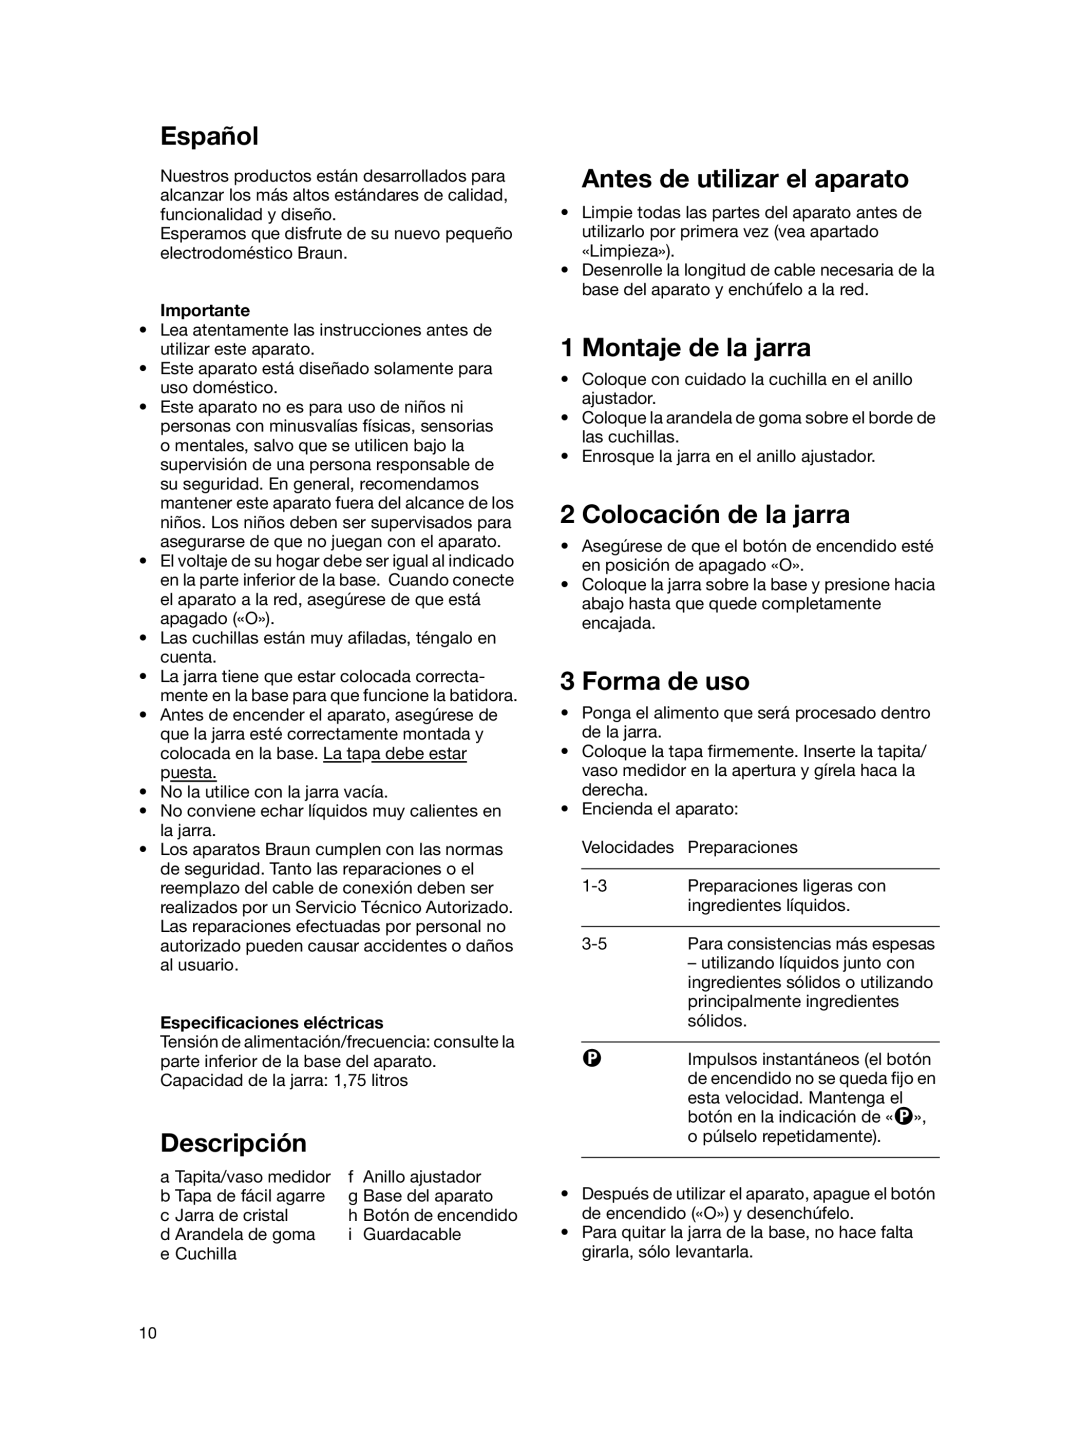 Braun MX 2050 BLACK manual Español, Descripción, Antes de utilizar el aparato, Montaje de la jarra, Colocación de la jarra 